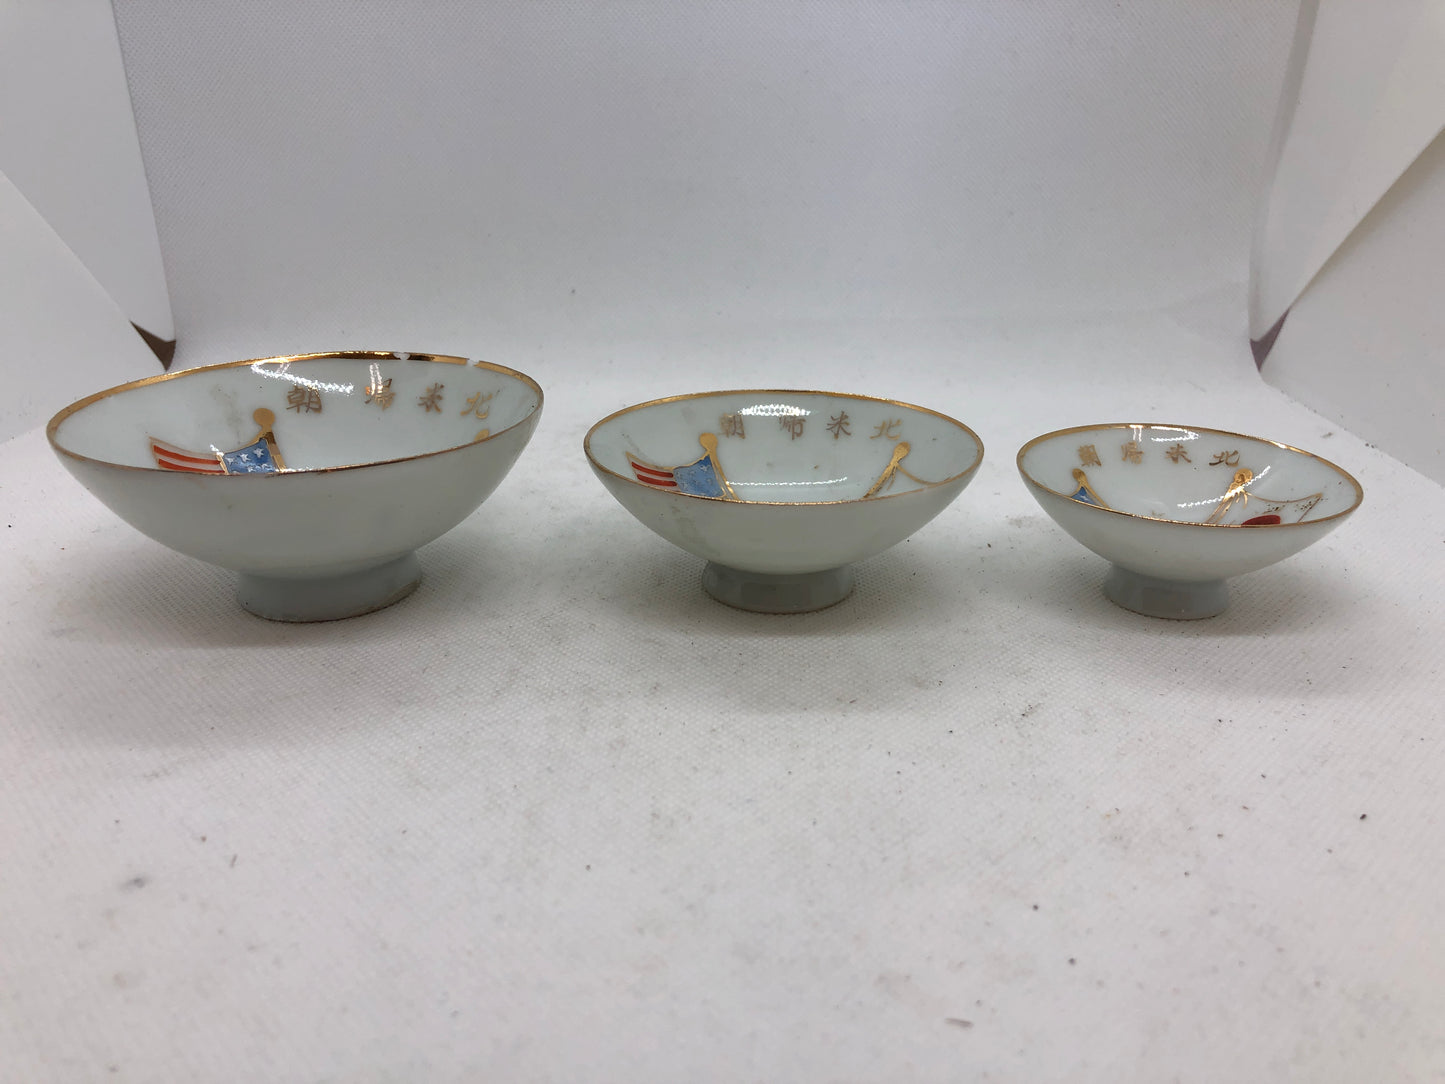 Y4543 Imperial Japan Army Triple Sake cup set Japanese WW2 vintage tablelware